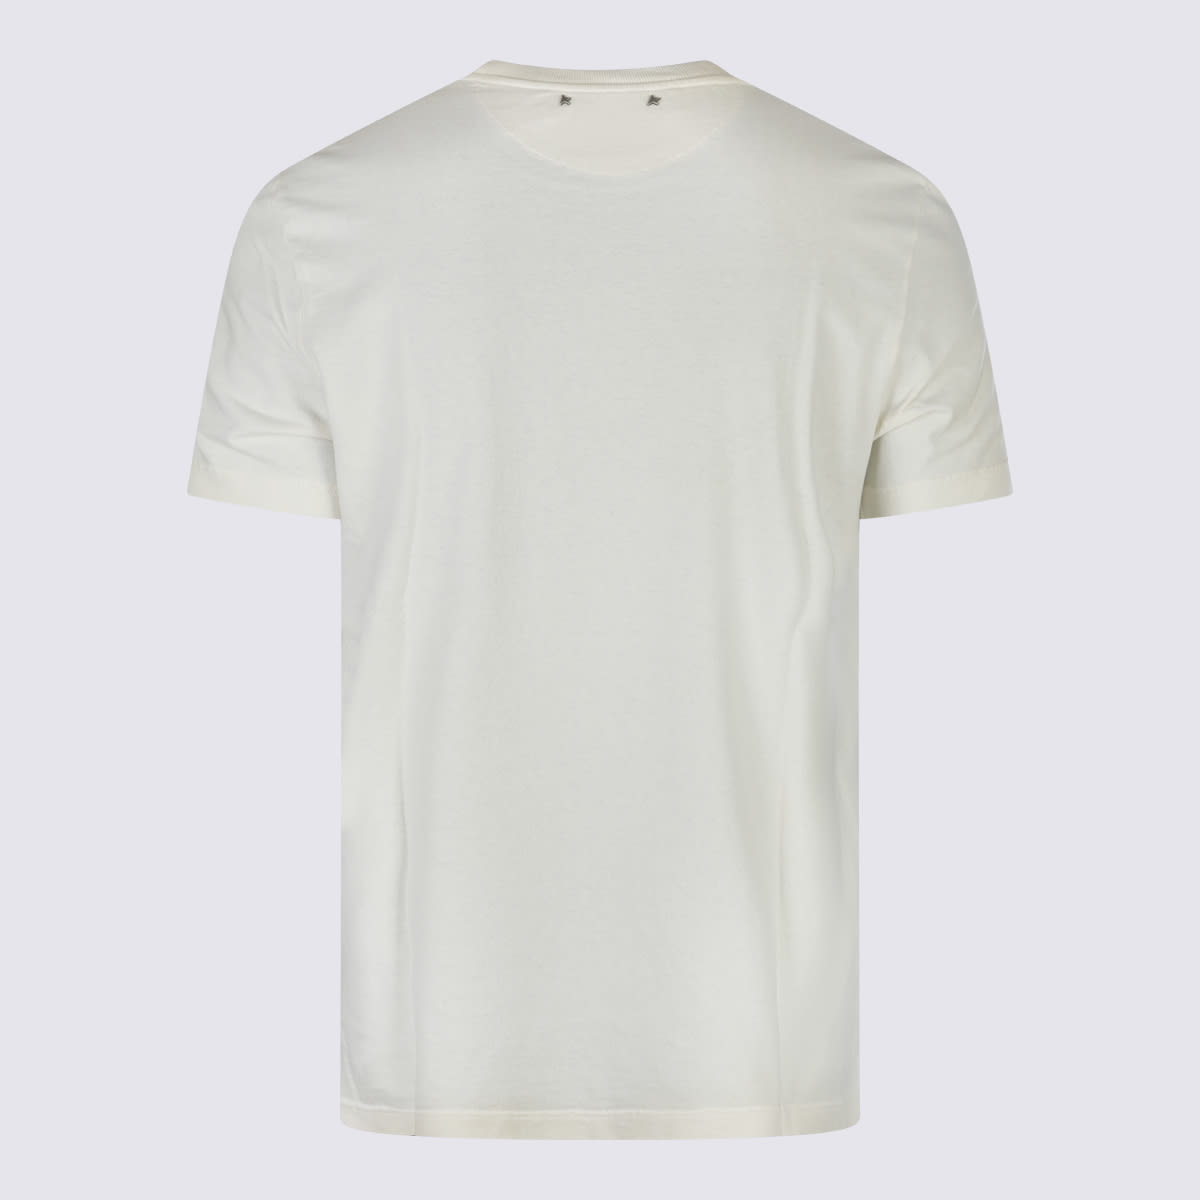 Shop Golden Goose White Cotton T-shirt